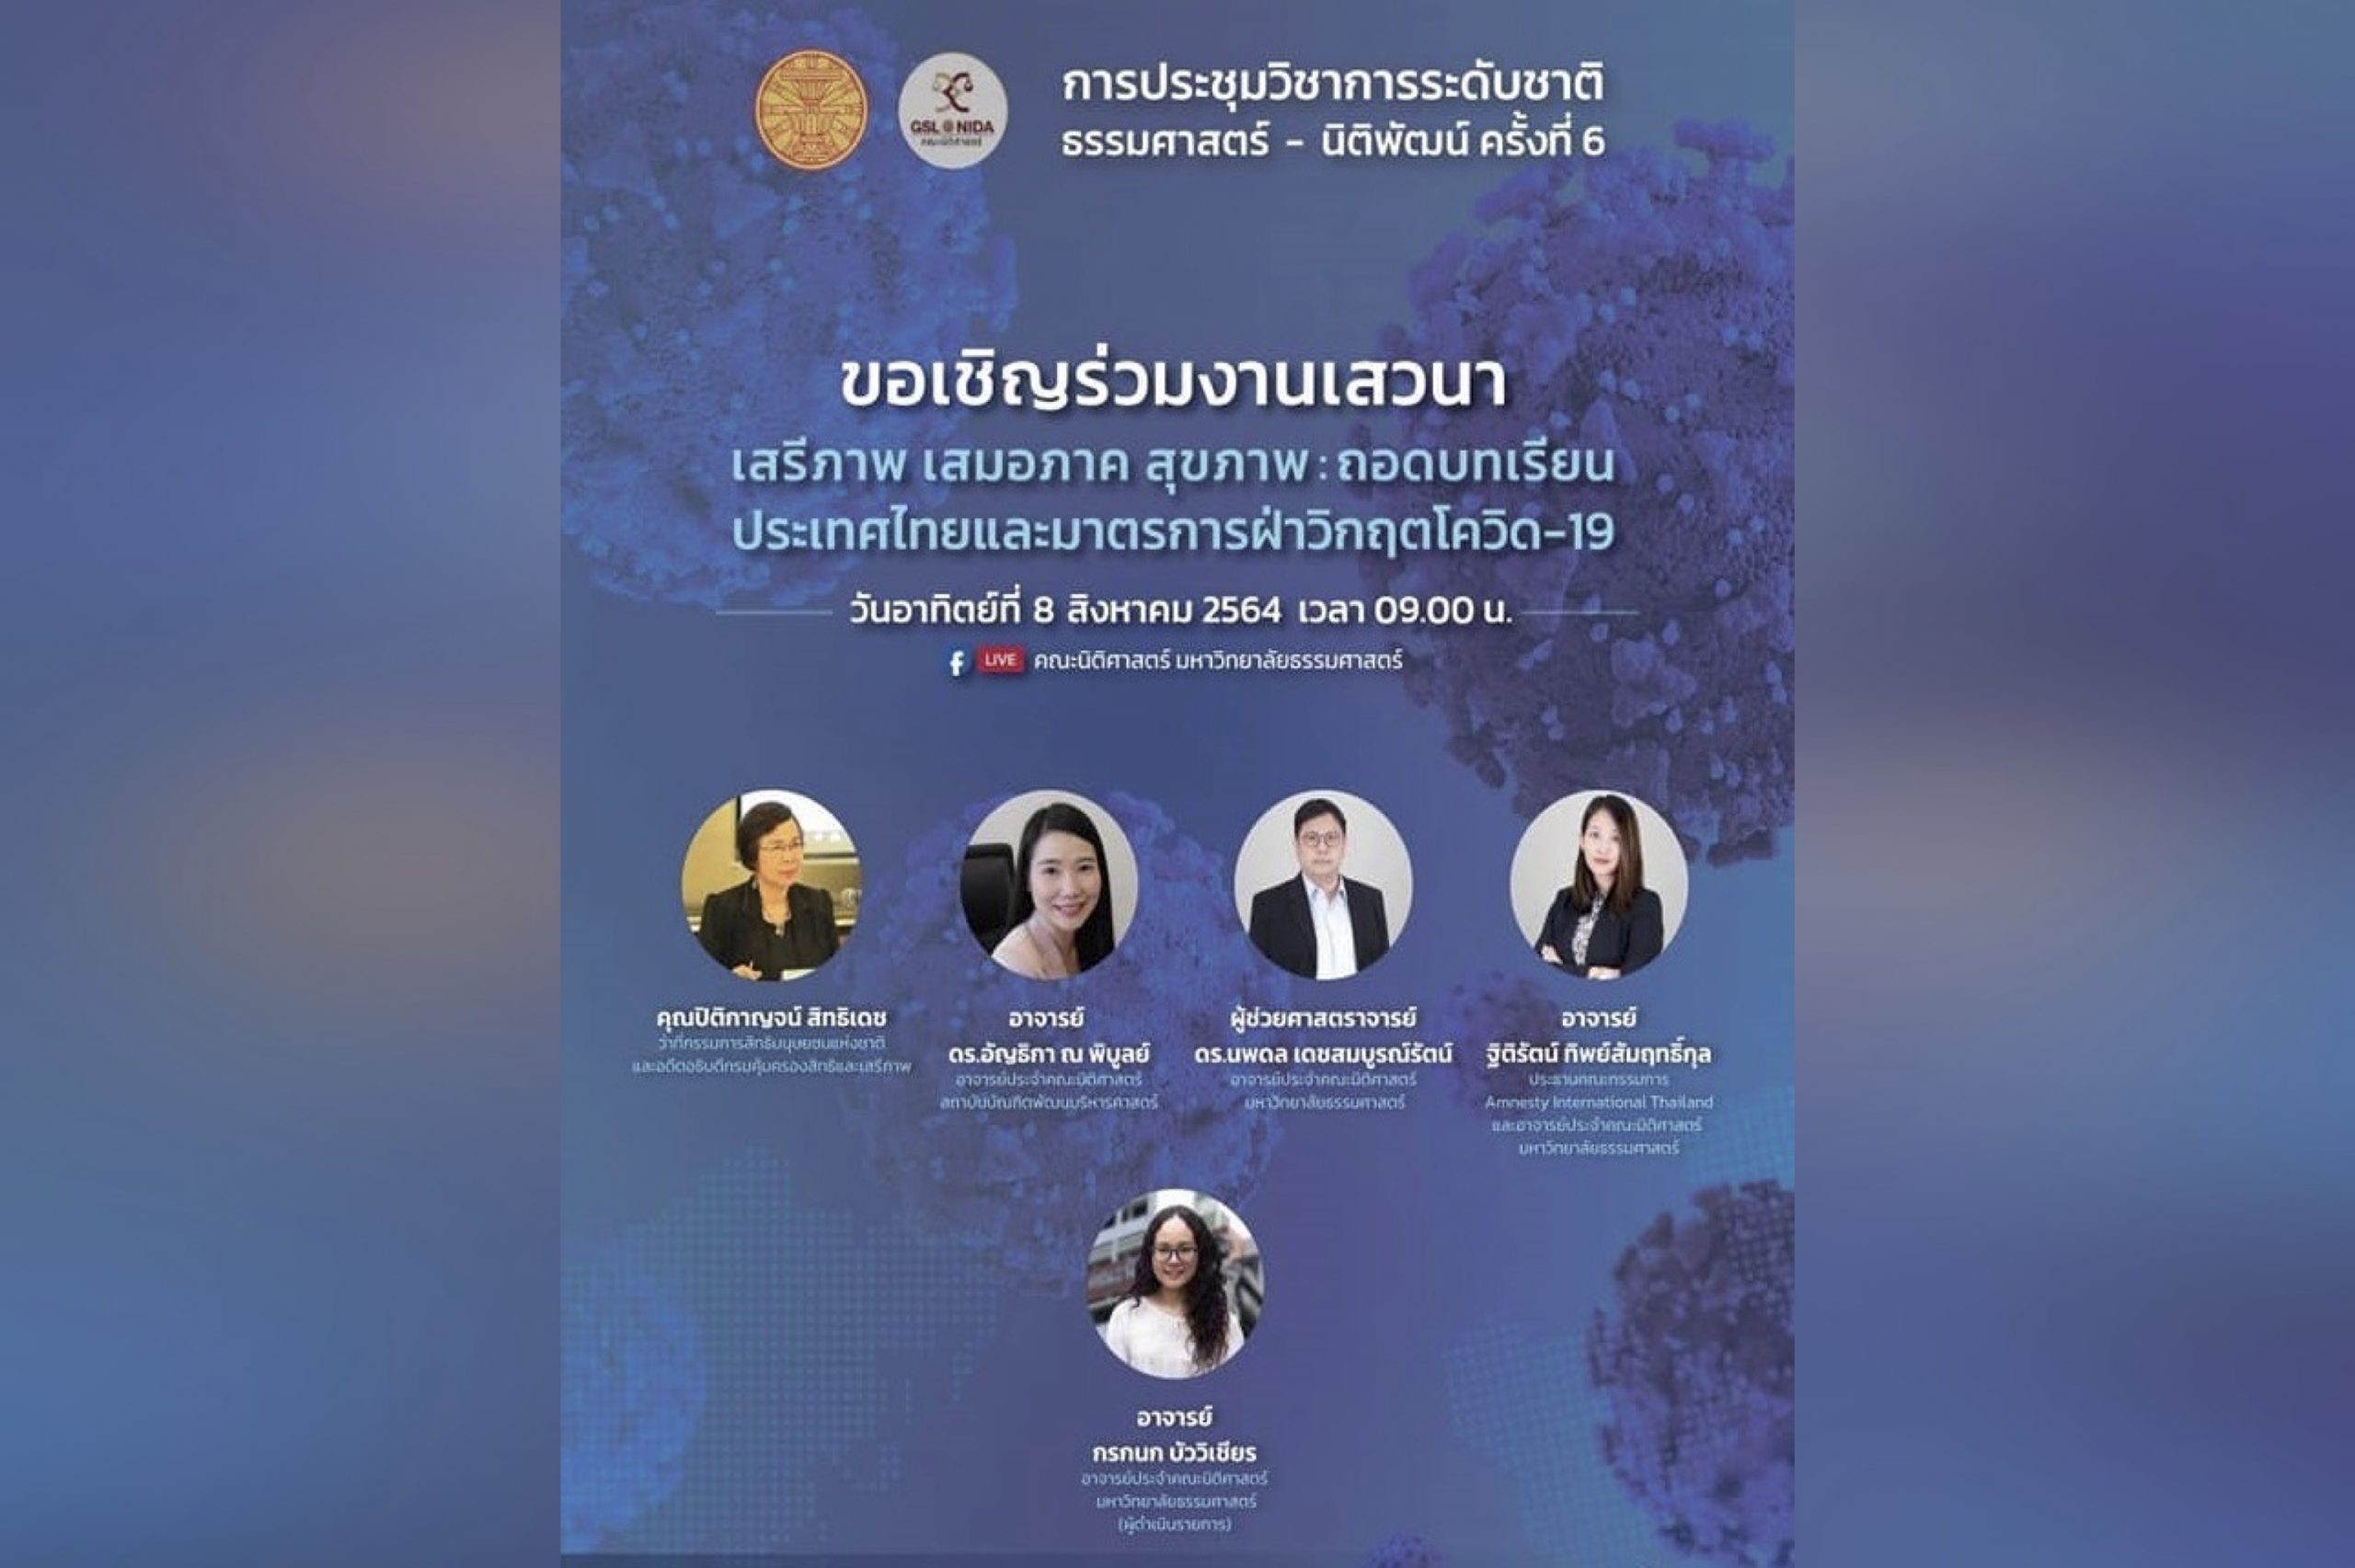 สรุปสาระสำคัญจากการประชุมวิชาการระดับชาติ ธรรมศาสตร์-นิติพัฒน์ ครั้งที่ 6  “เสรีภาพ เสมอภาค สุขภาพ : ถอดบทเรียนประเทศไทยและมาตรการฝ่าวิกฤติโควิด-19”